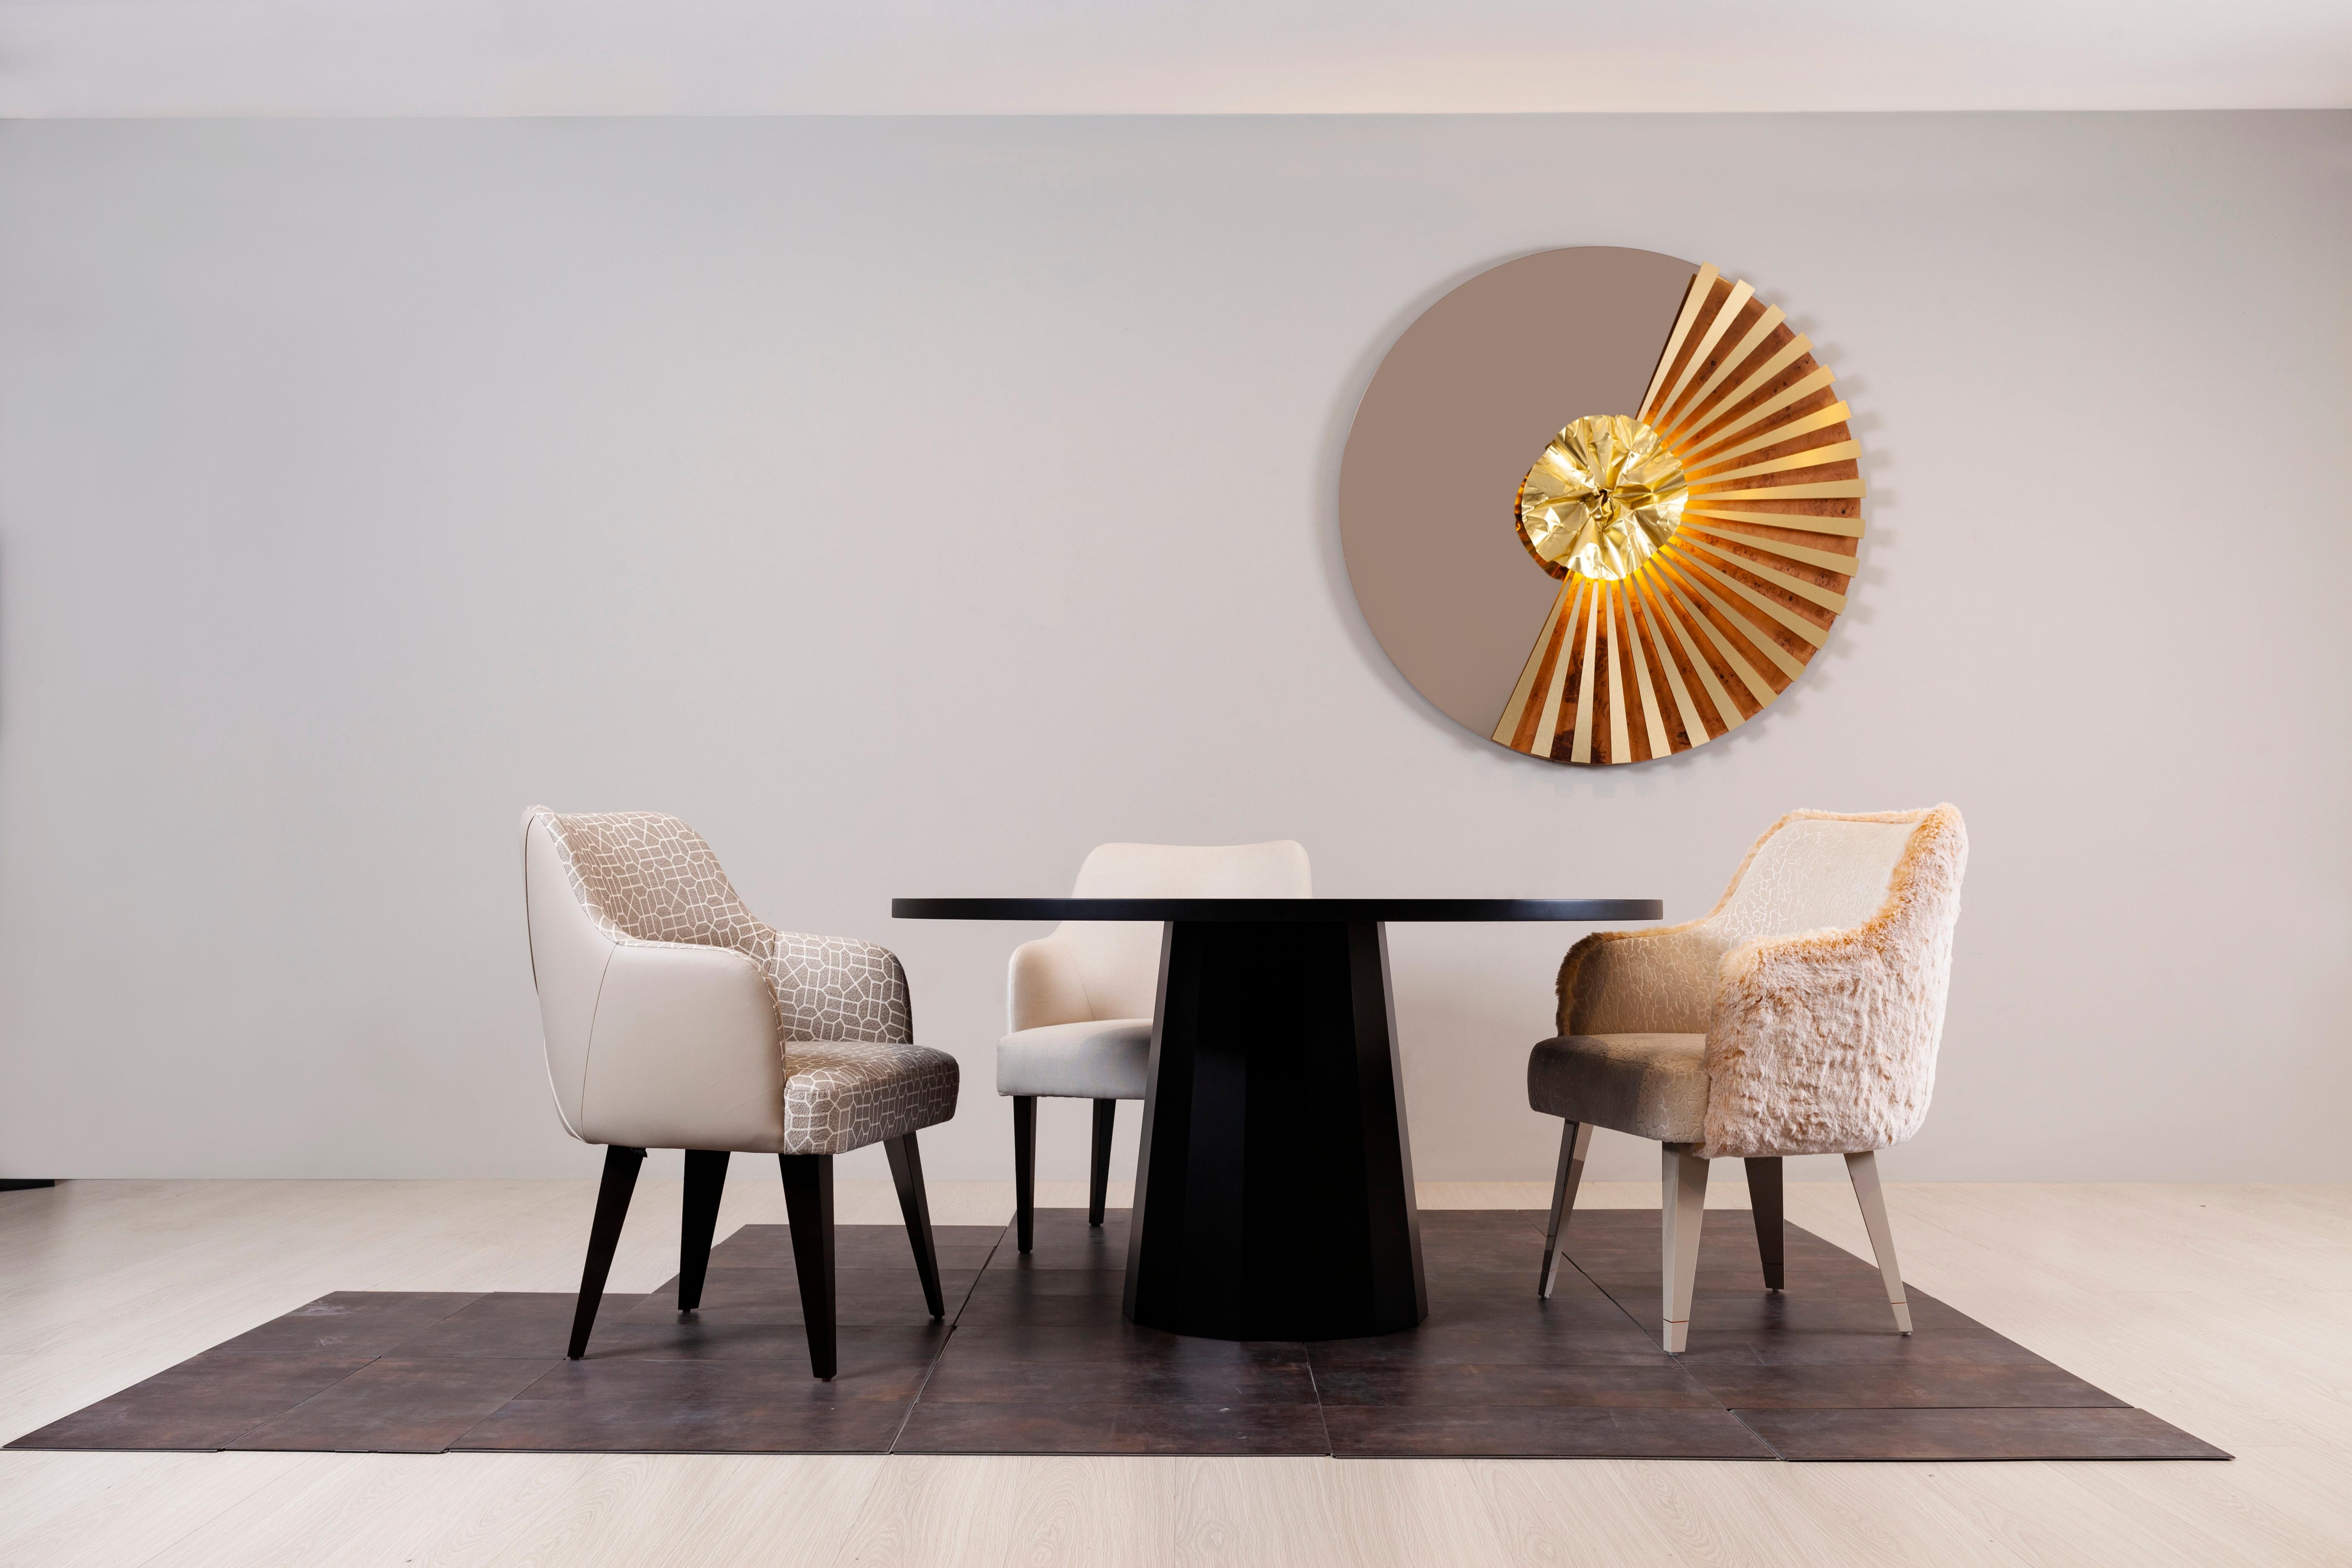 Howlite Esstisch mit 4 Sitzplätzen, Modern Collection, handgefertigt in Portugal - Europa von GF Modern.

Der Howlite Esstisch steht für den Beginn einer neuen modernen Ära. Die Tischplatte aus Calacatta Bianco-Marmor und das dunkel oxidierte